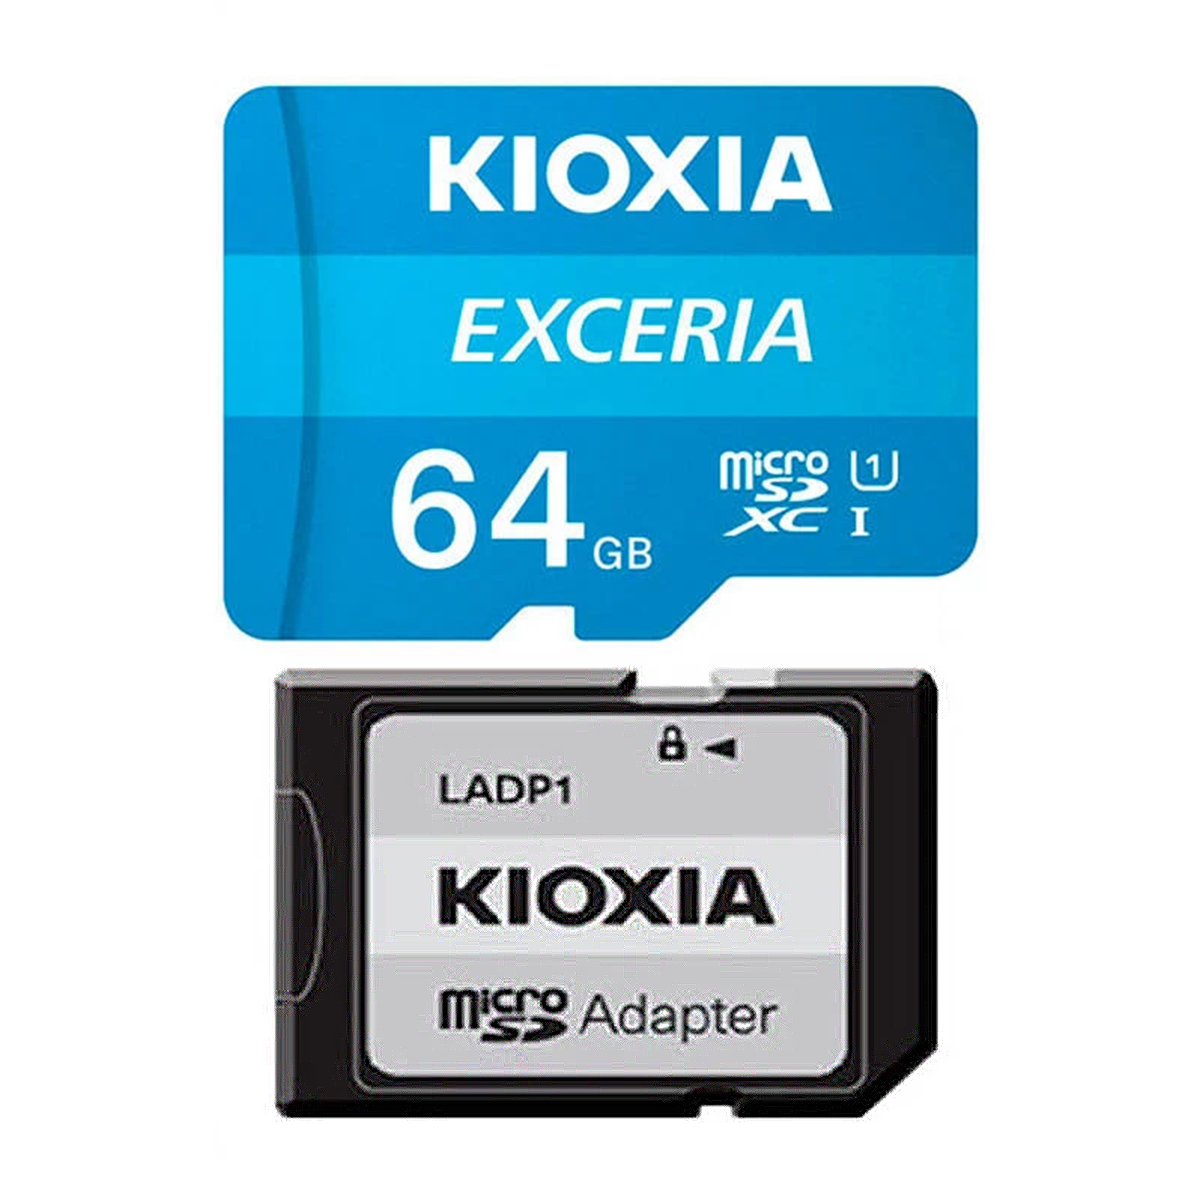 کارت حافظه microSDHC کیوکسیا مدل EXCERIA کلاس 10 استاندارد UHS-I U1 سرعت 100MBps ظرفیت 64 گیگابایت به همراه آداپتور SD